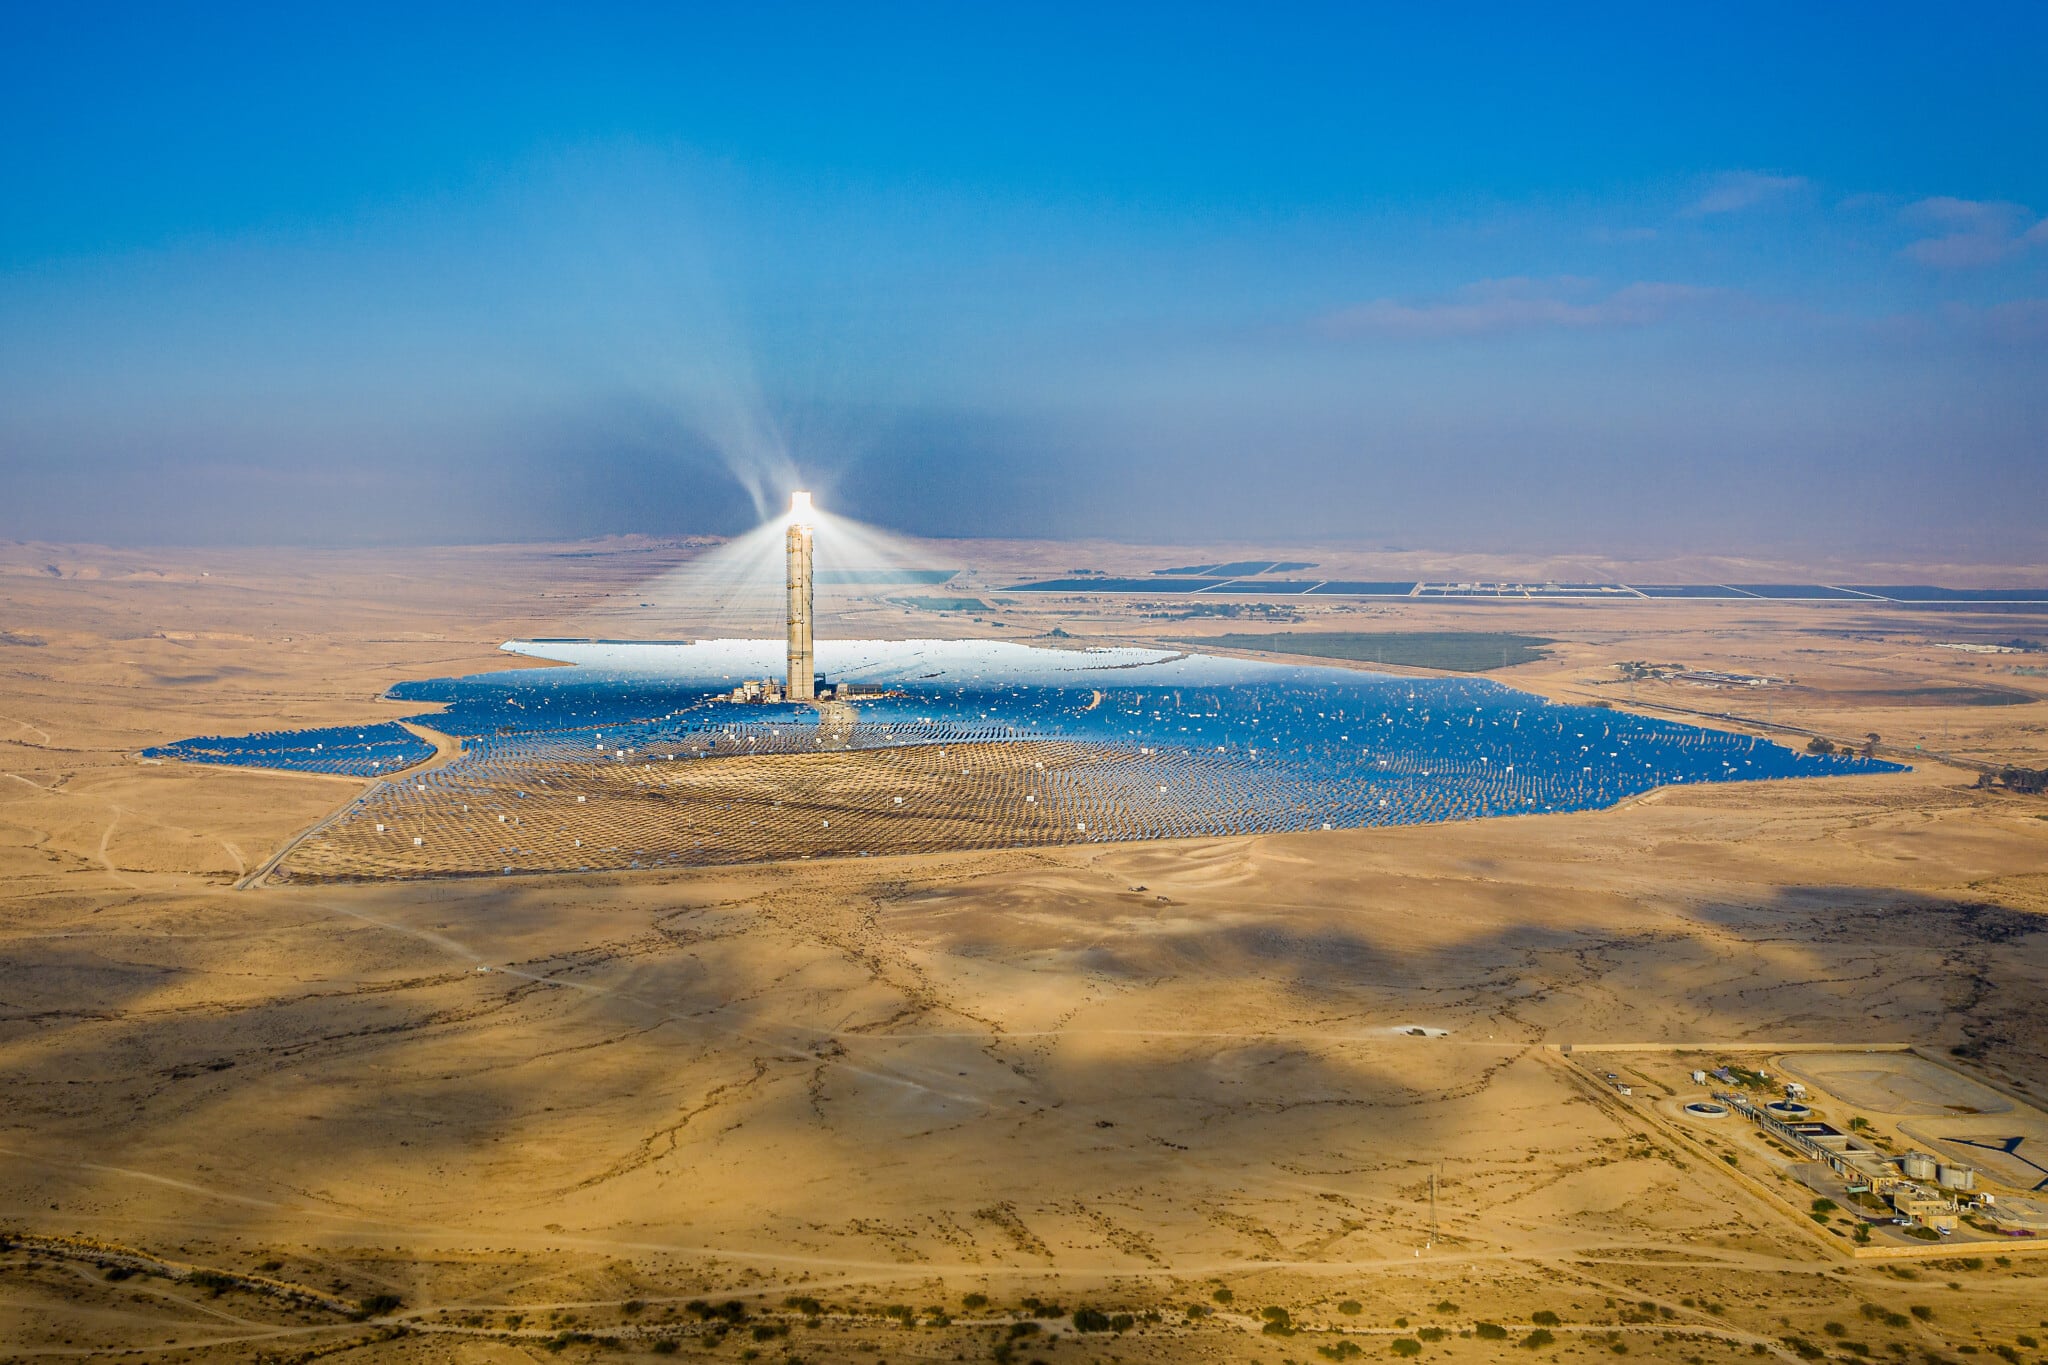 מבט על תחנת הכוח אשלים, תחנת כוח סולארית, במדבר הנגב (צילום: Yonatan Sindel/FLASh90)